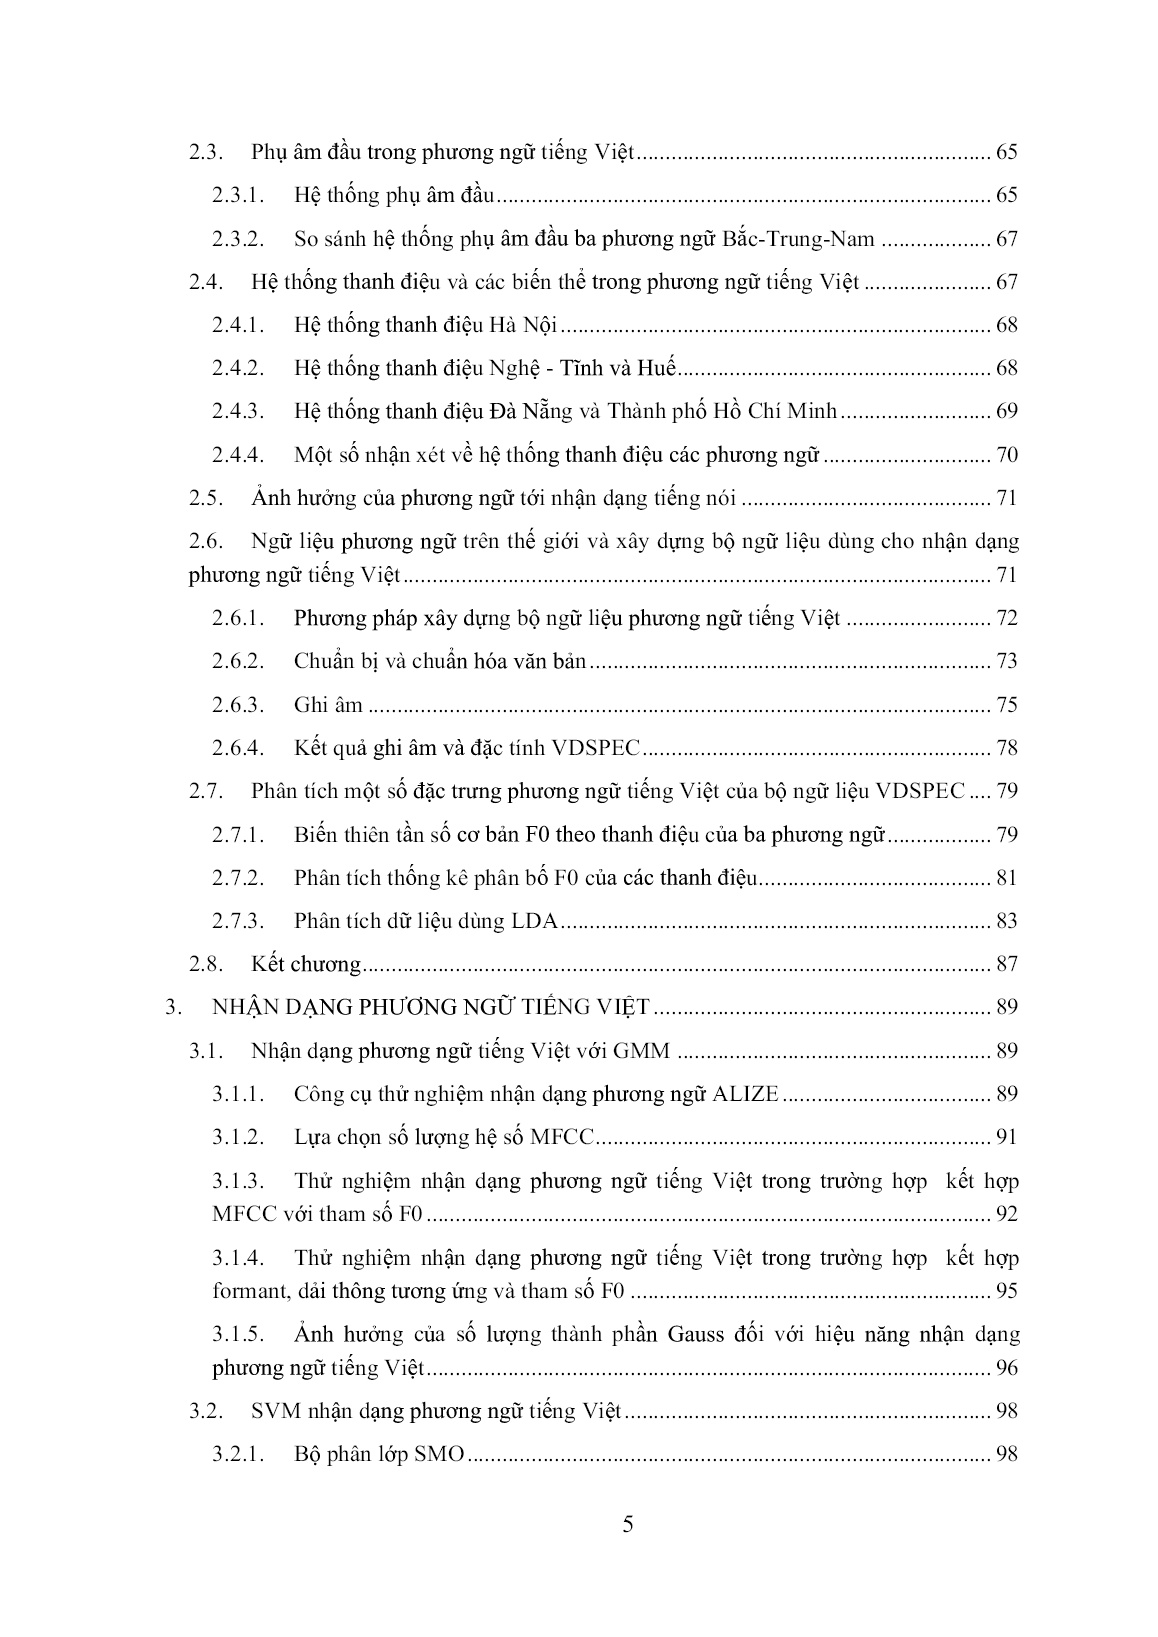 Luận án Nhận dạng tự động tiếng nói phát âm liên tục cho các phương ngữ chính của tiếng Việt theo phương thức phát âm trang 5